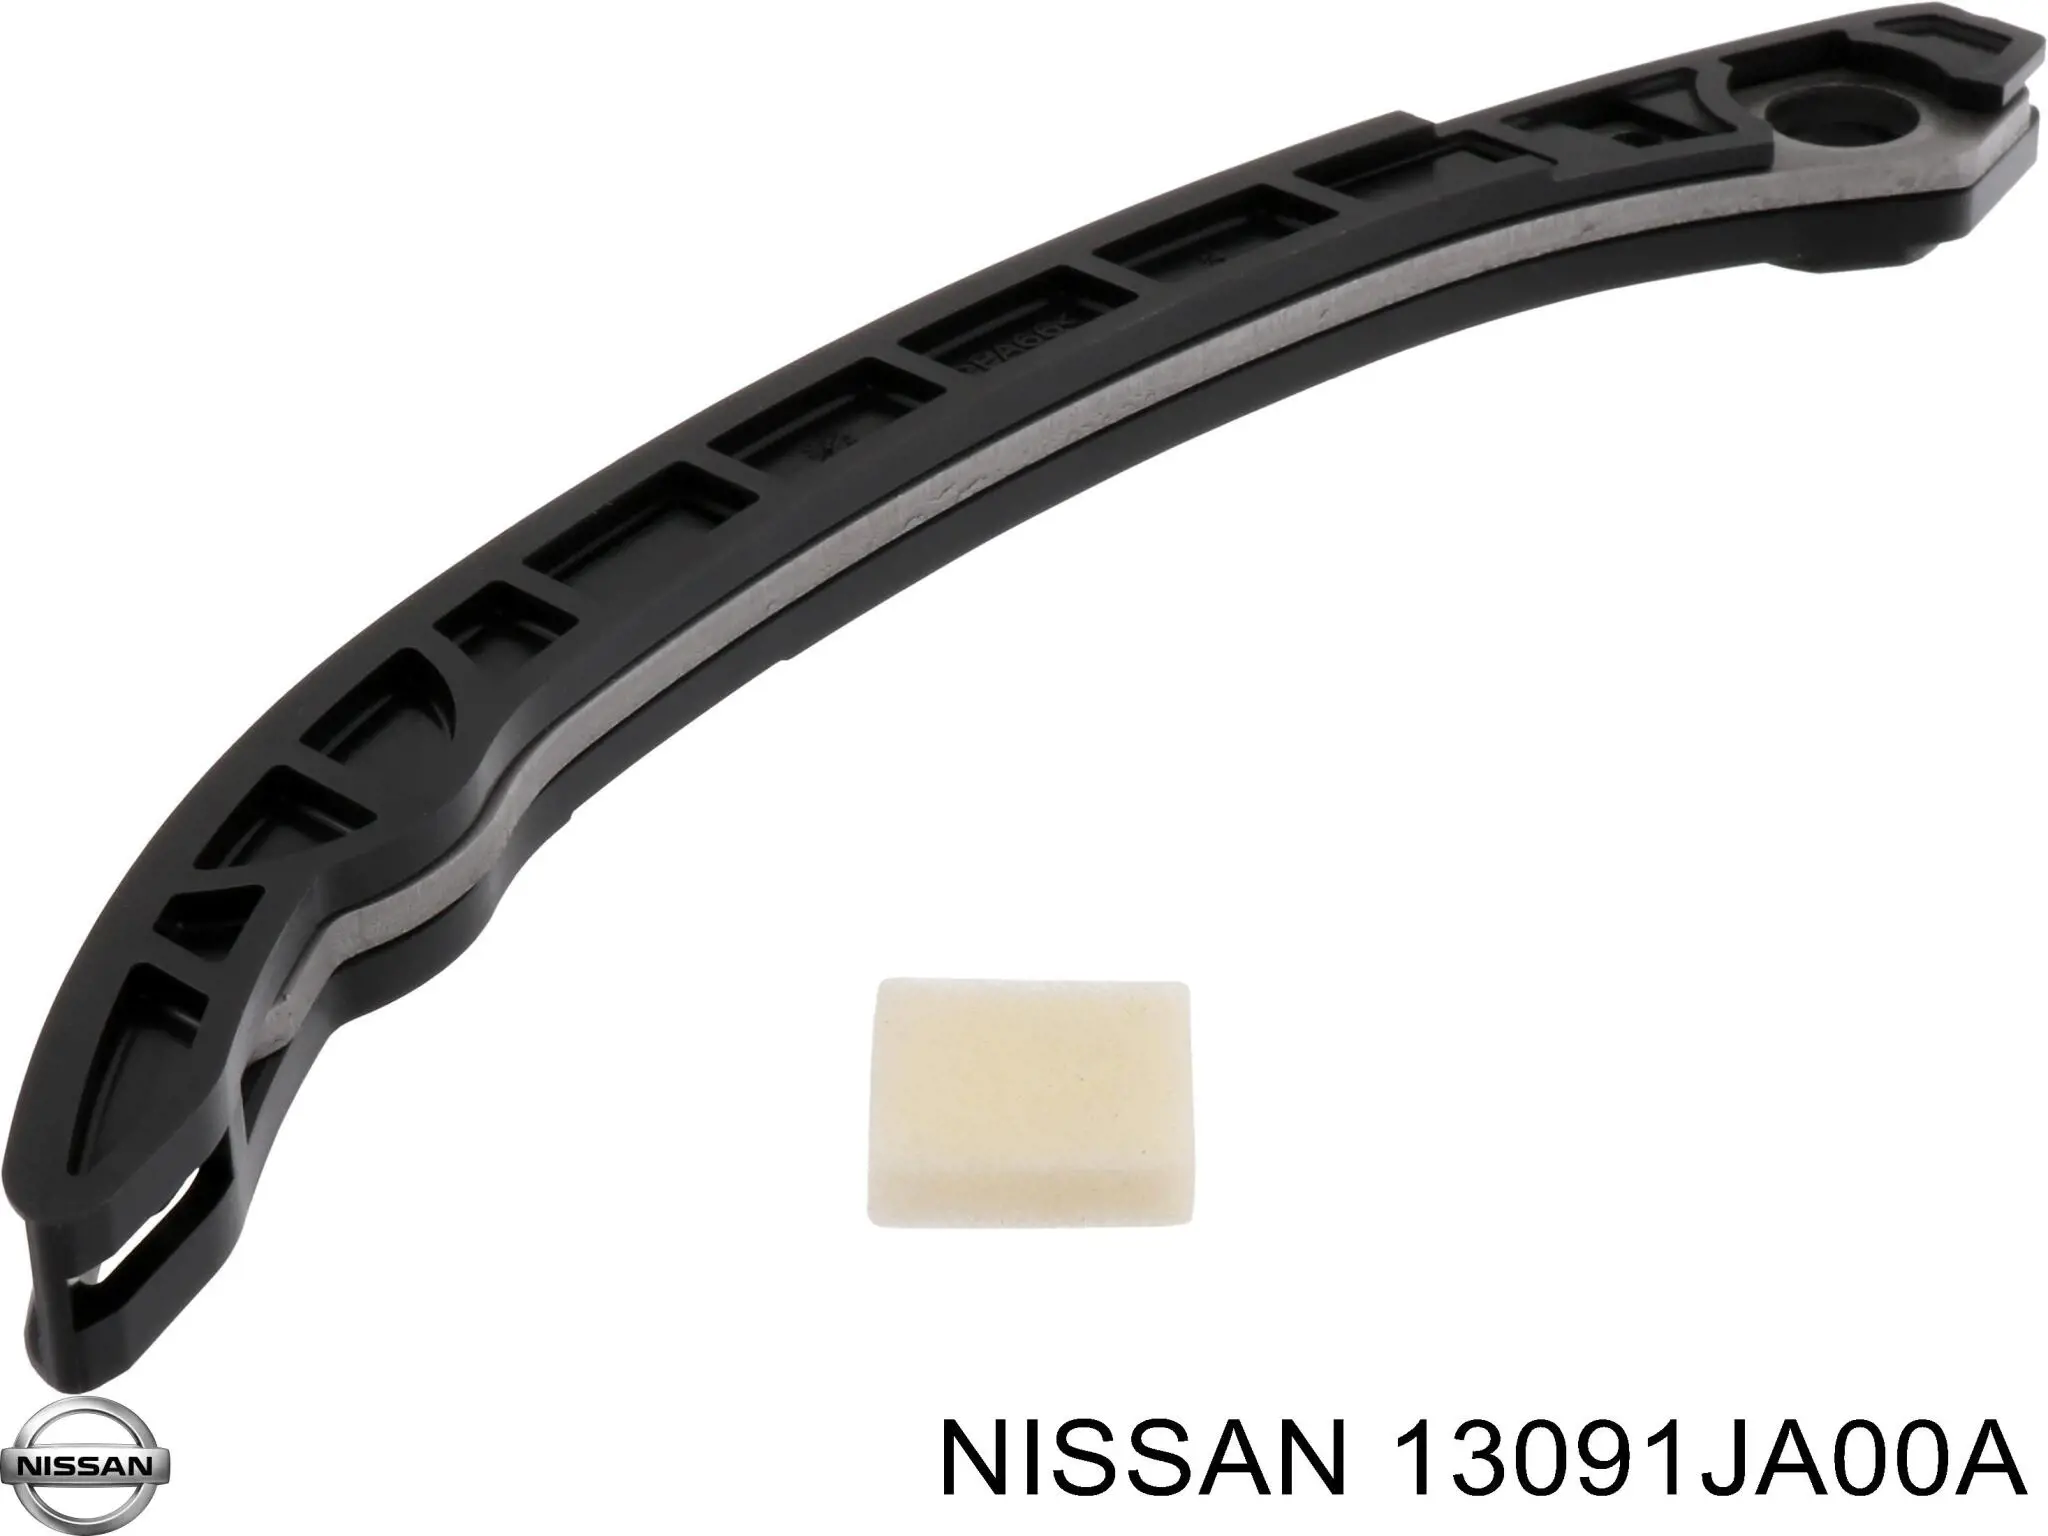 13091JA00A Nissan заспокоювач ланцюга грм, правий